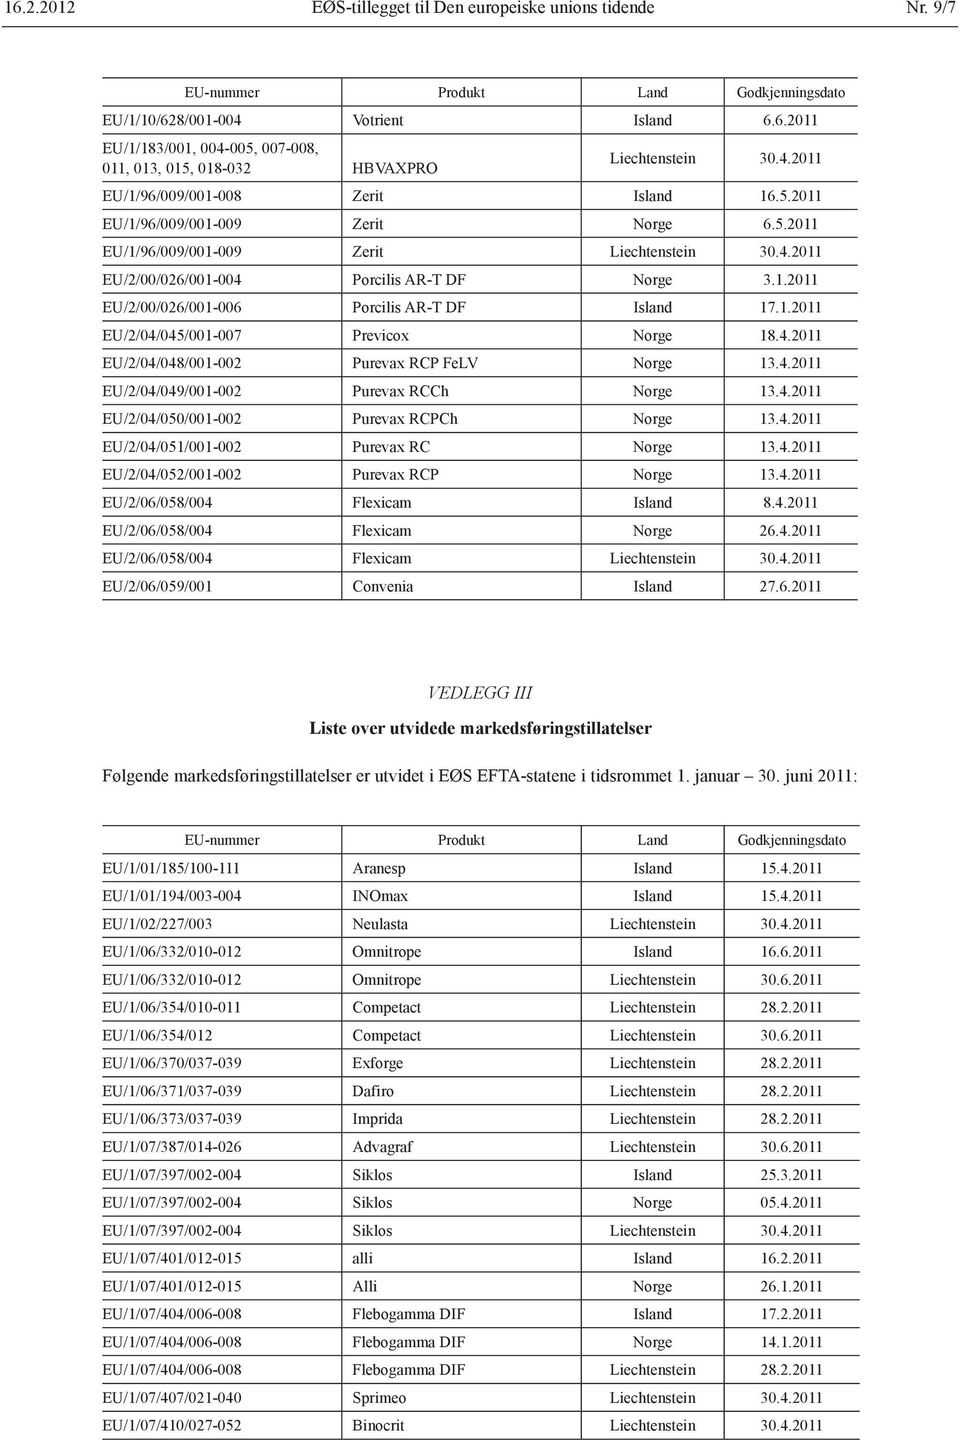 1.2011 EU/2/04/045/001-007 Previcox Norge 18.4.2011 EU/2/04/048/001-002 Purevax RCP FeLV Norge 13.4.2011 EU/2/04/049/001-002 Purevax RCCh Norge 13.4.2011 EU/2/04/050/001-002 Purevax RCPCh Norge 13.4.2011 EU/2/04/051/001-002 Purevax RC Norge 13.